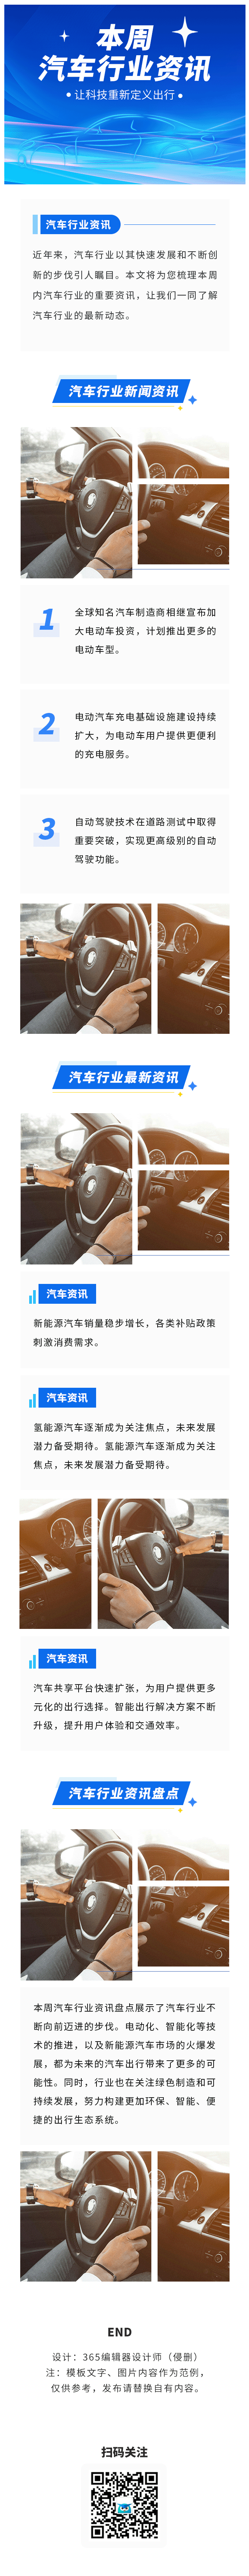 汽车行业科技资讯行业资讯汽车资讯蓝色GIF